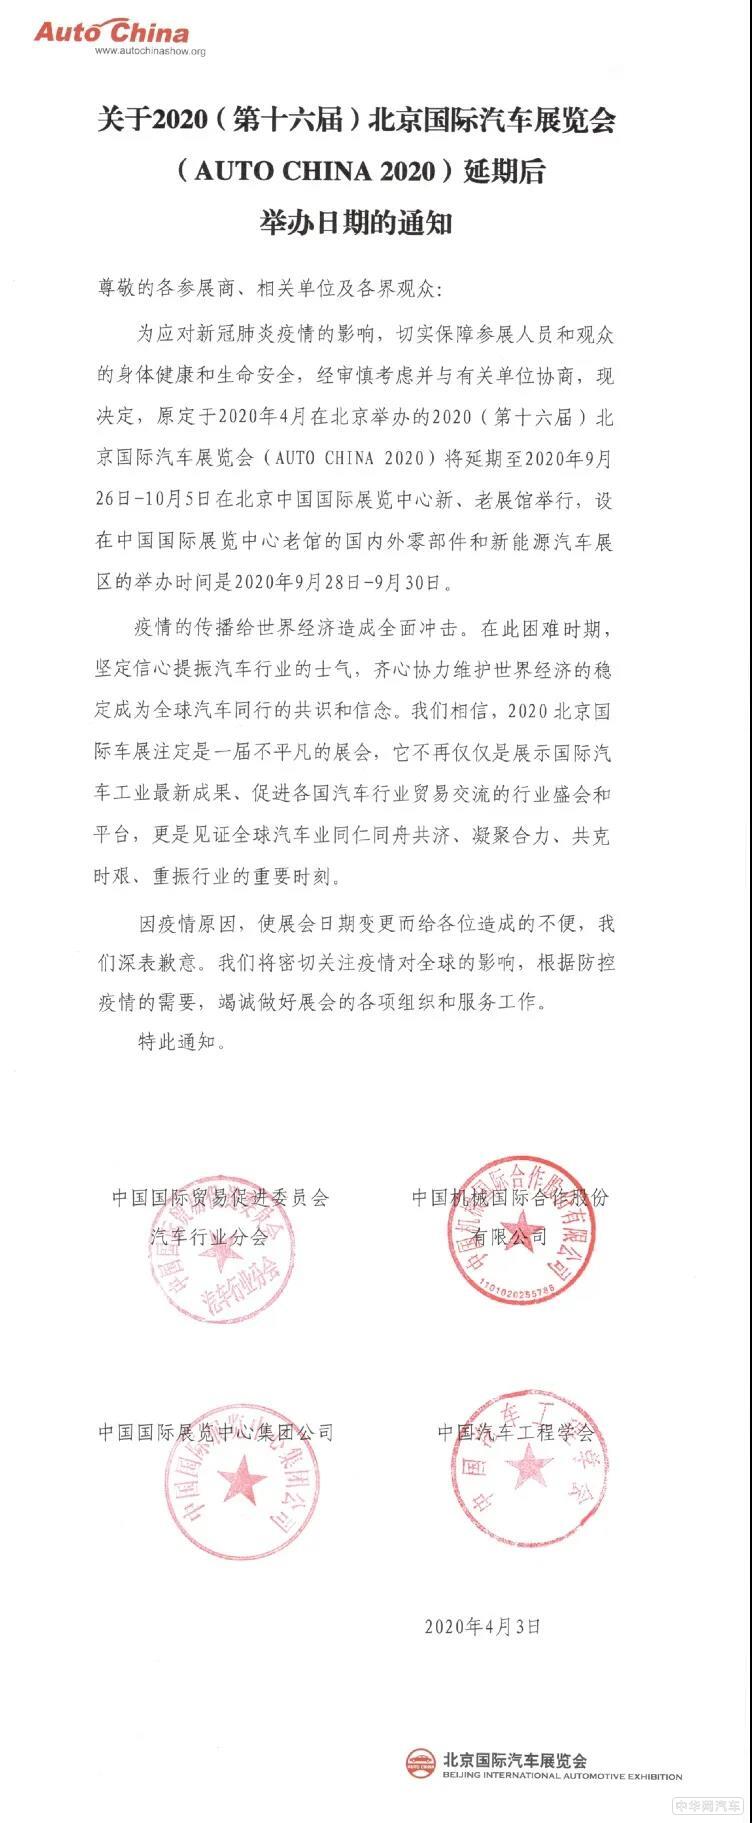 延期至9月26日举行 2020北京车展最新消息曝光